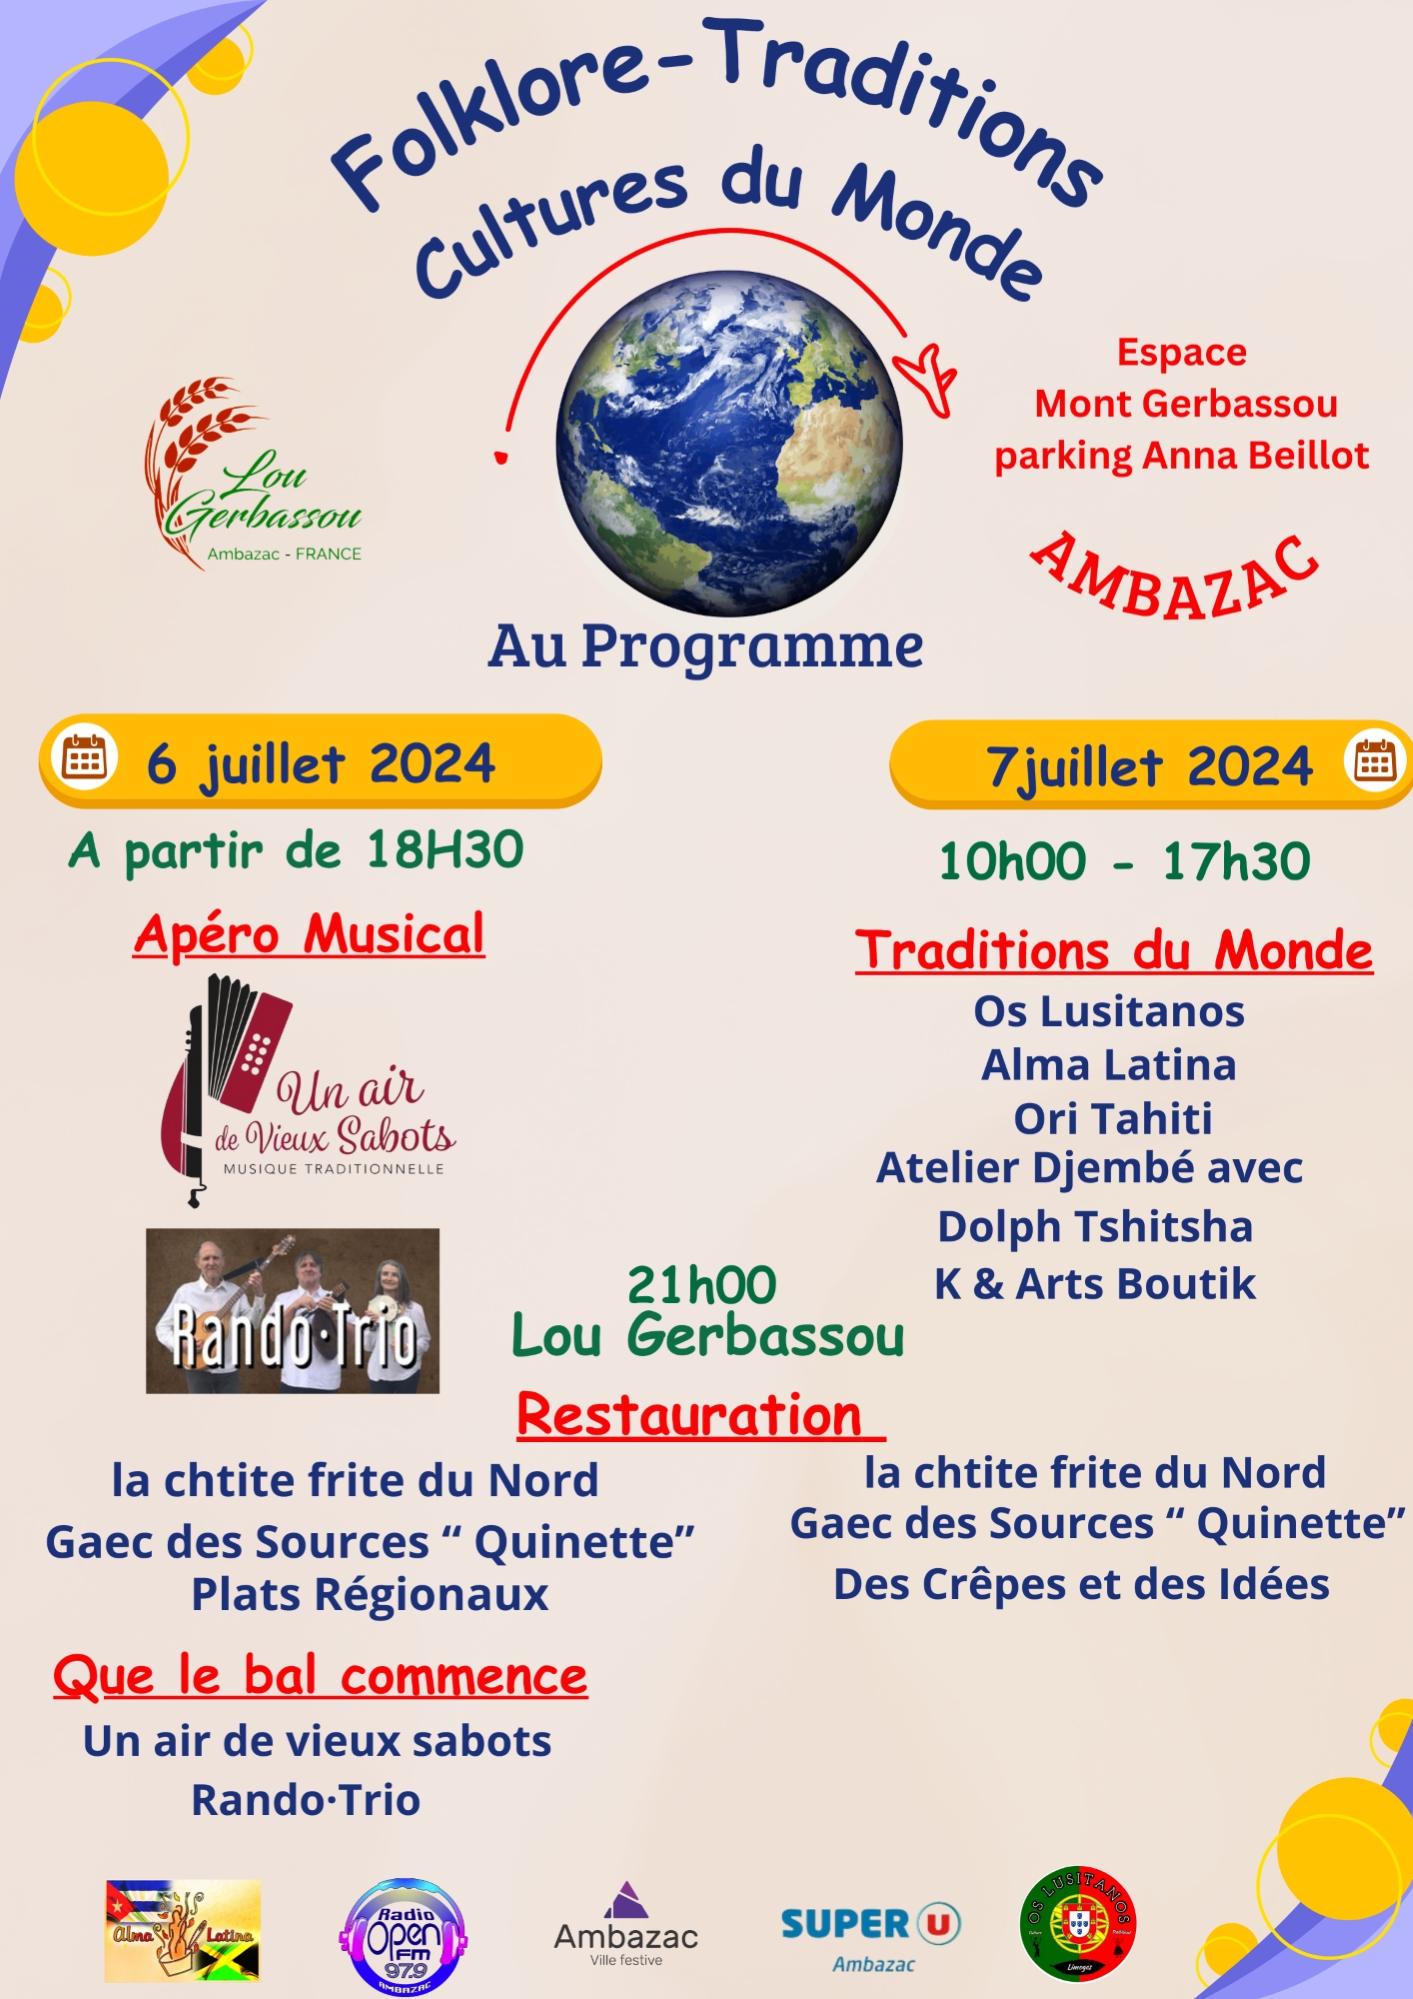 Folklore-Traditions Cultures du Monde le 6 et 7 juillet 2024